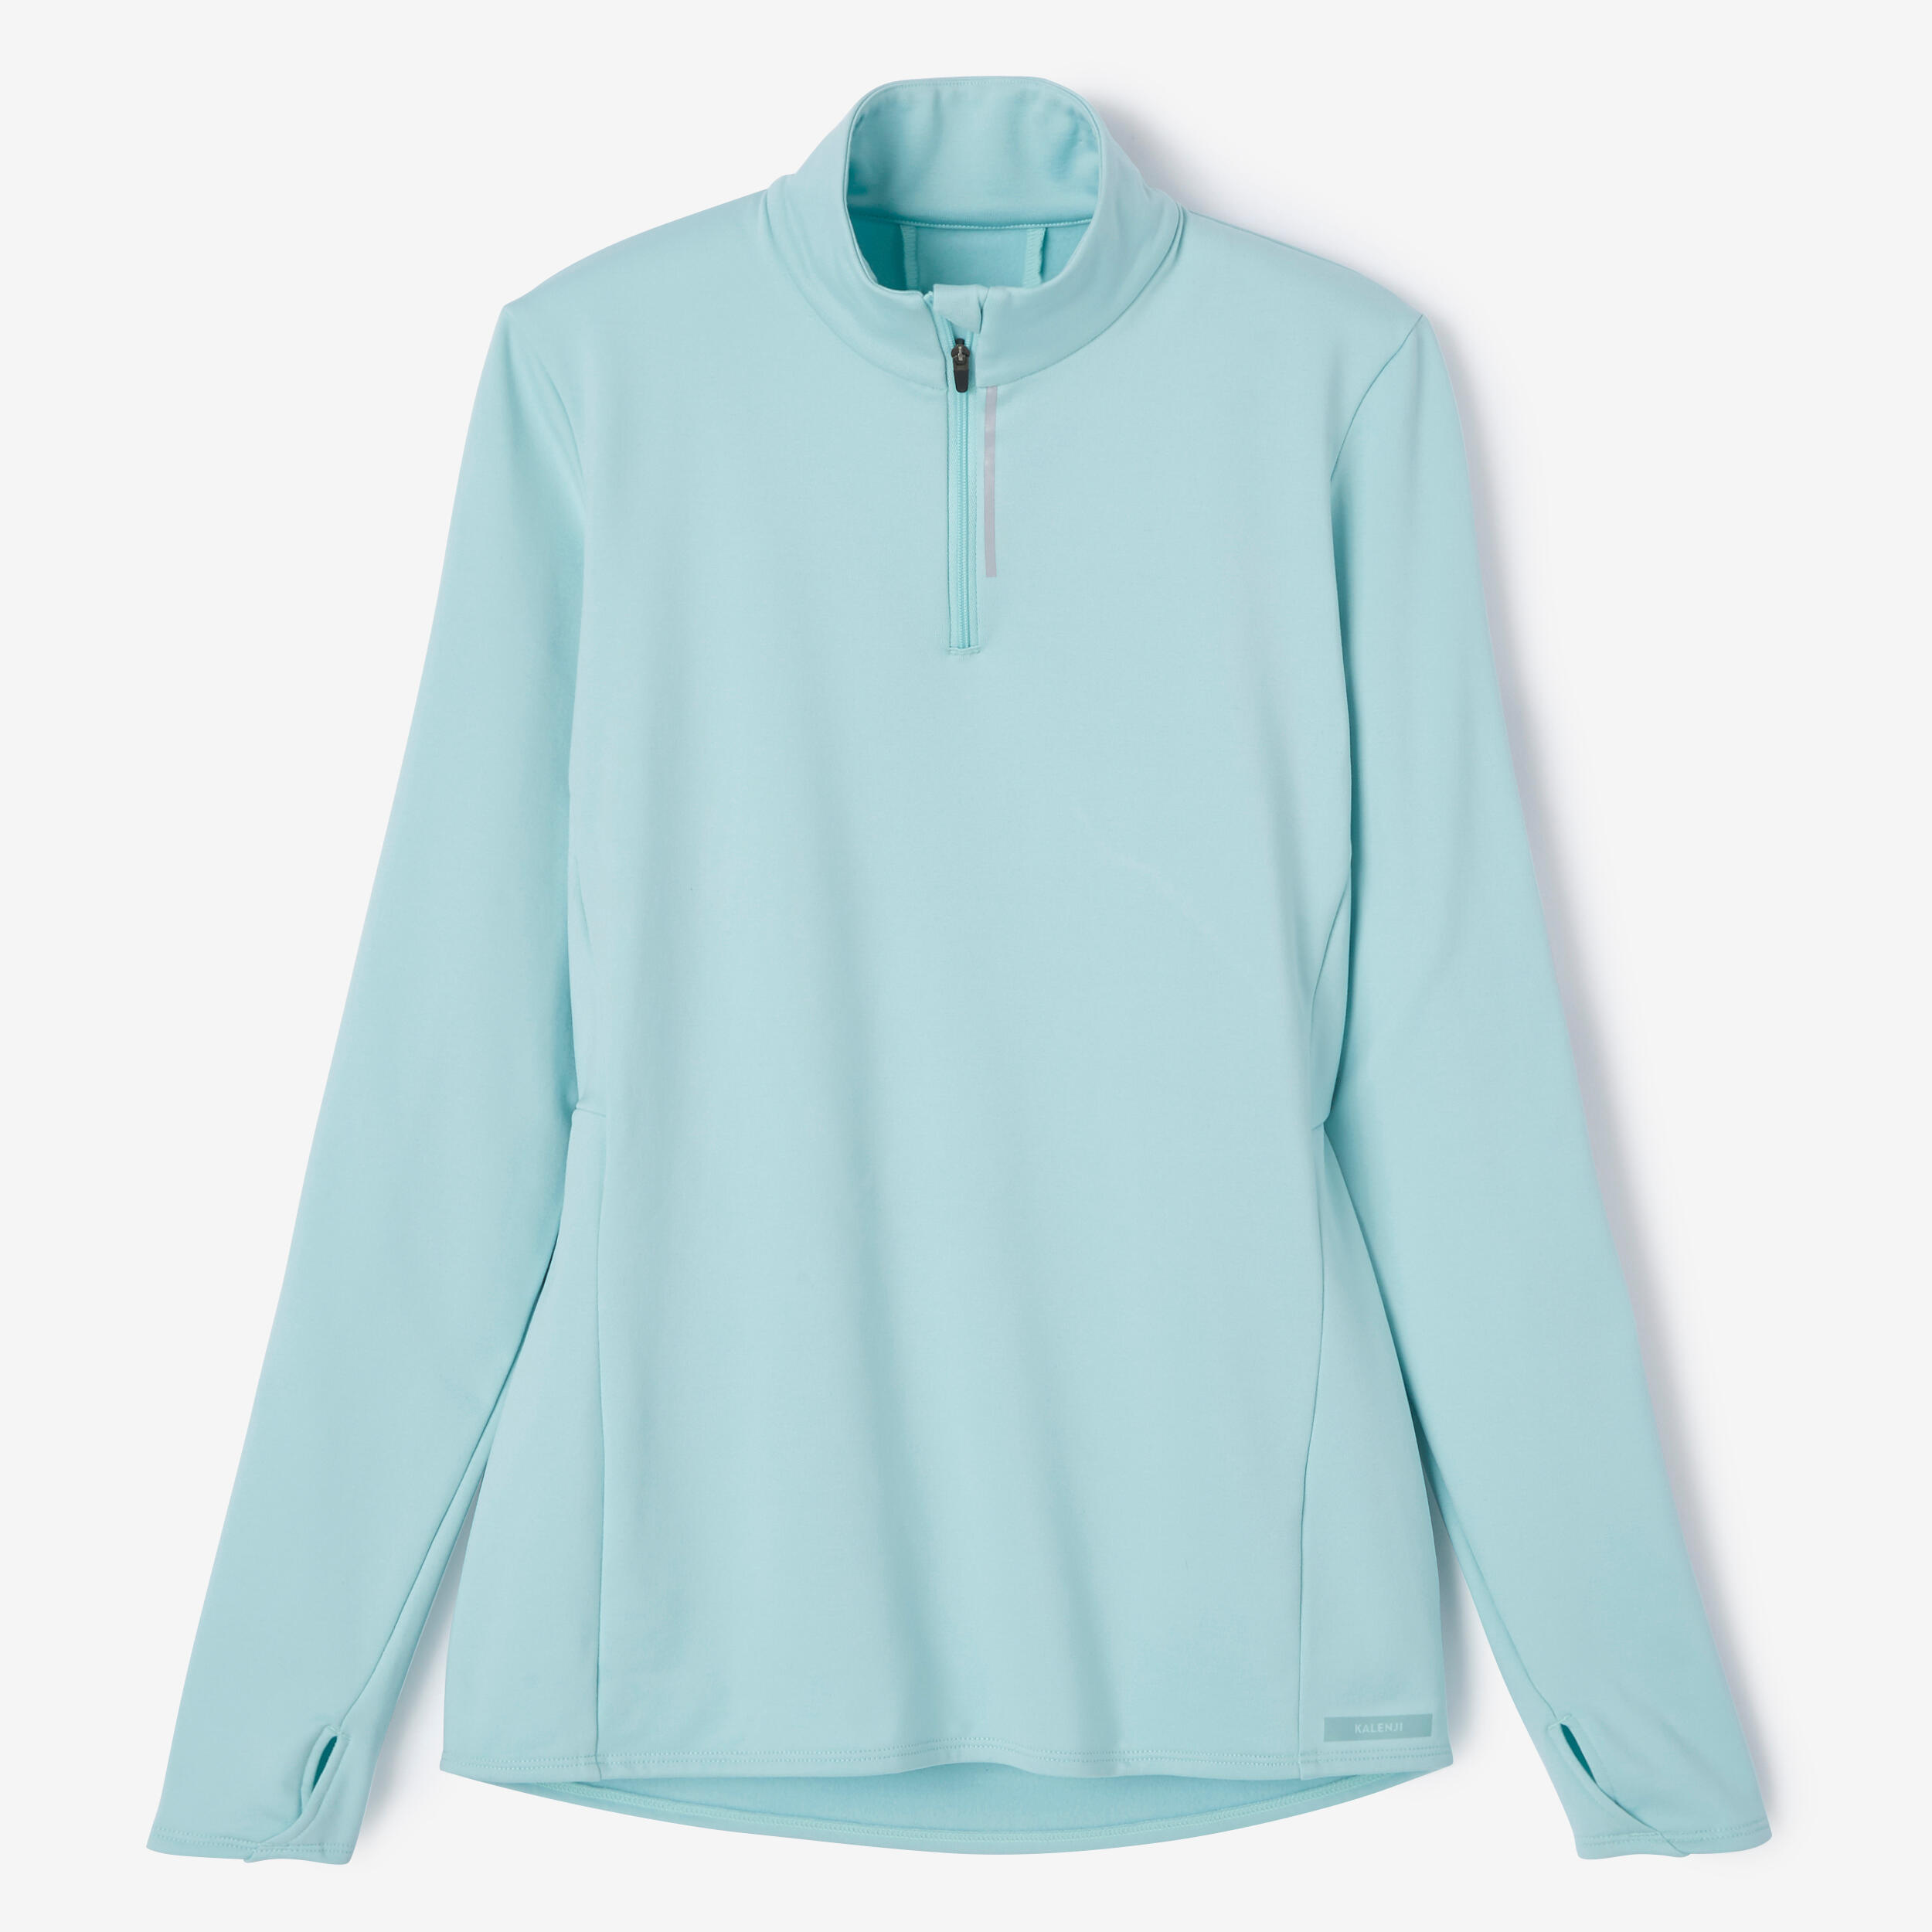 Zip Warm women's long-sleeved running T-shirt - light blue 6/7